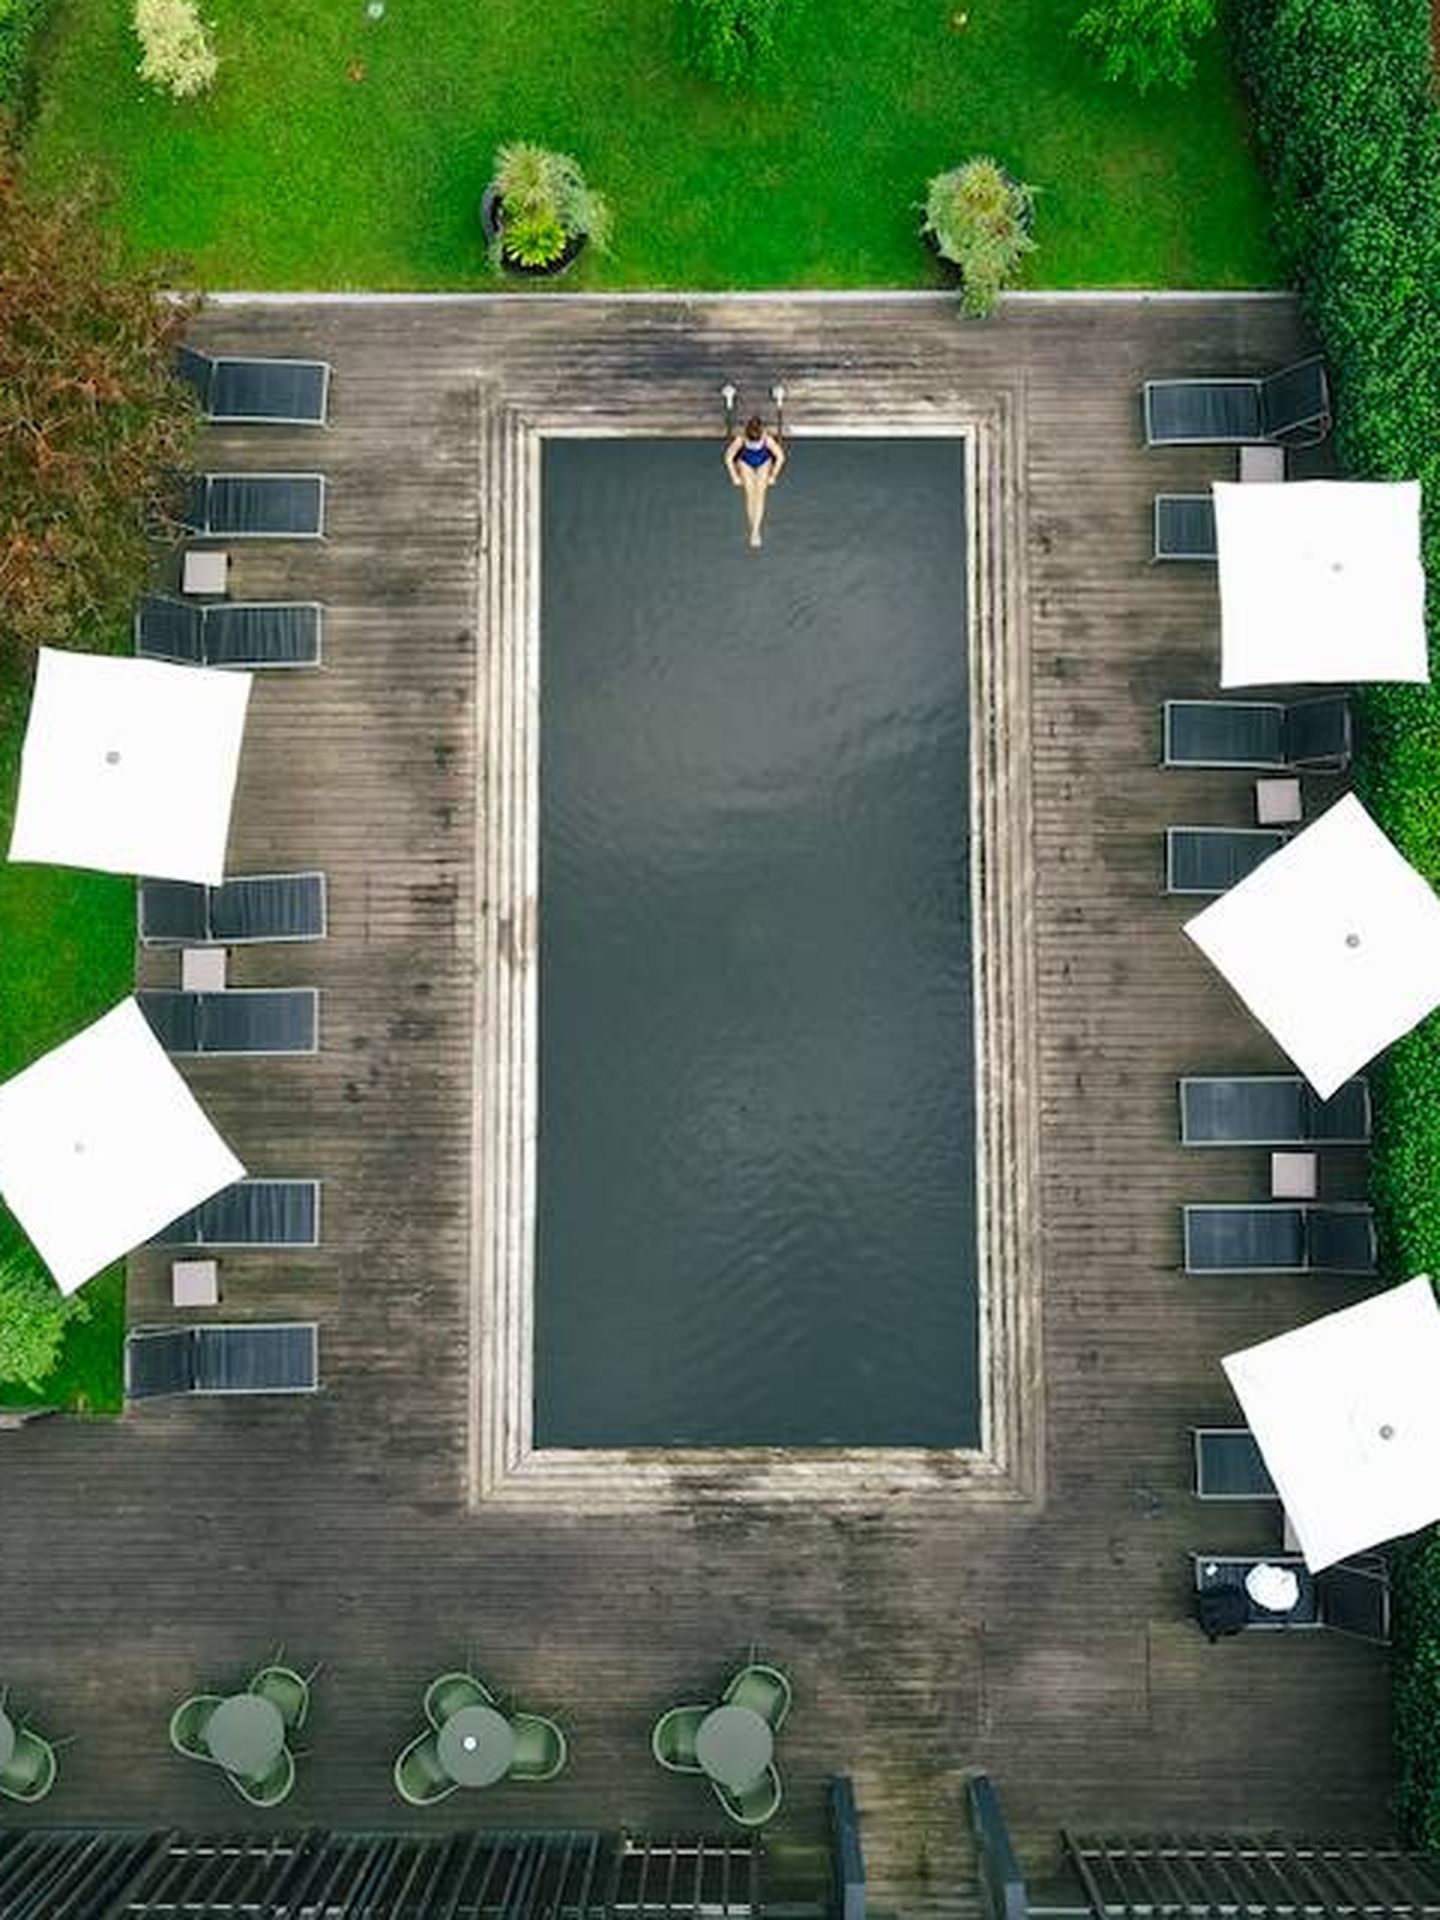 Una de las piscinas de agua ferruginosa del hotel. (Octant Furnas)